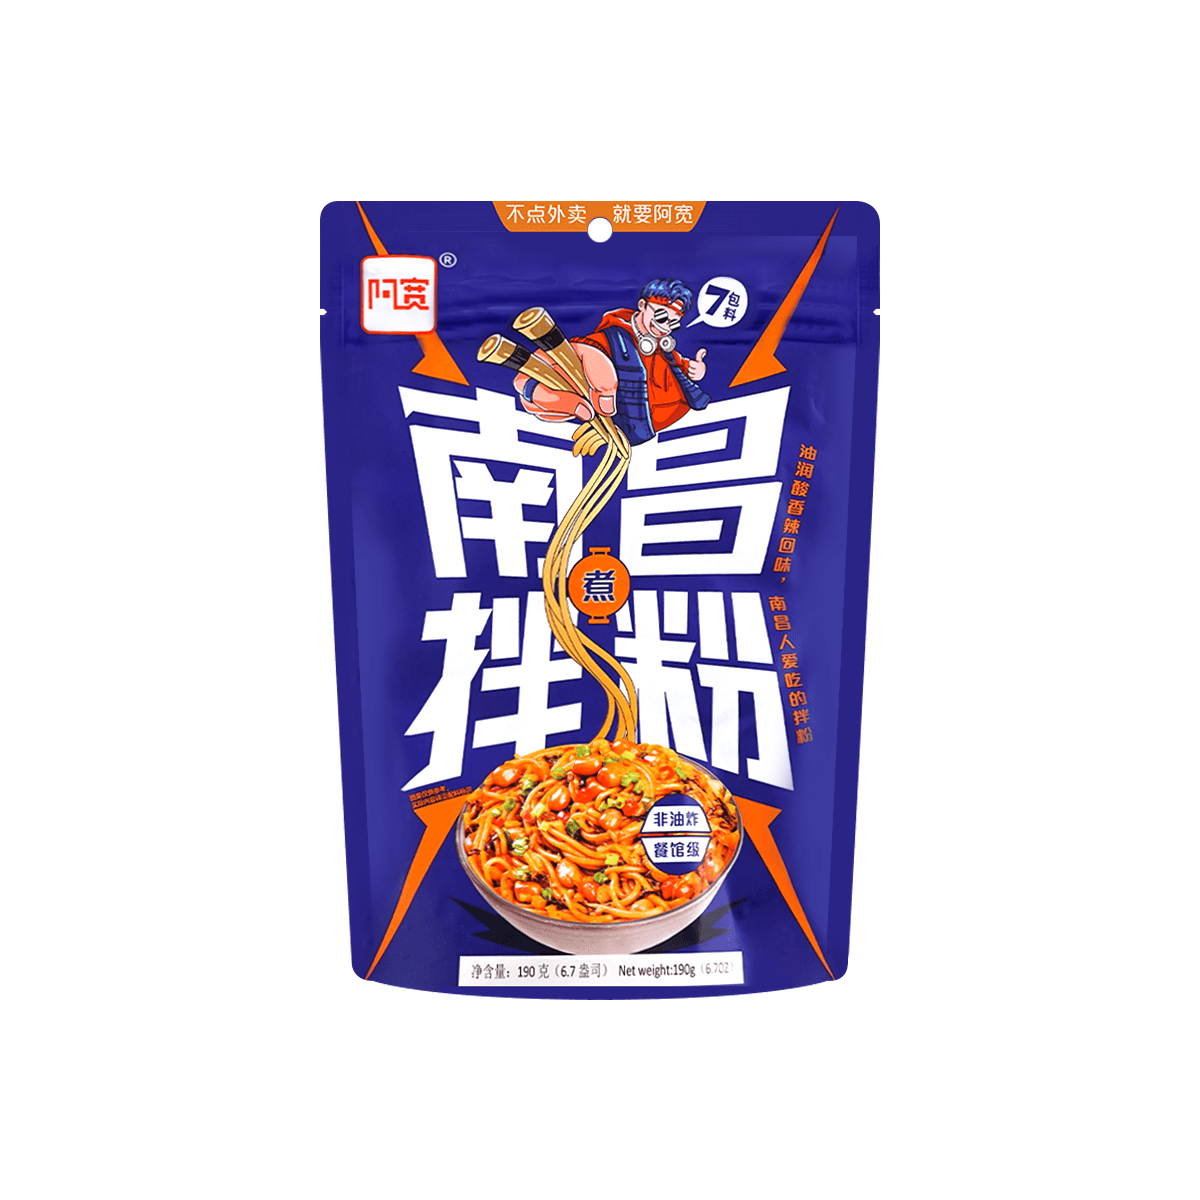 Yamibuy.com:Customer reviews:NanChang Dried Noodles 190g